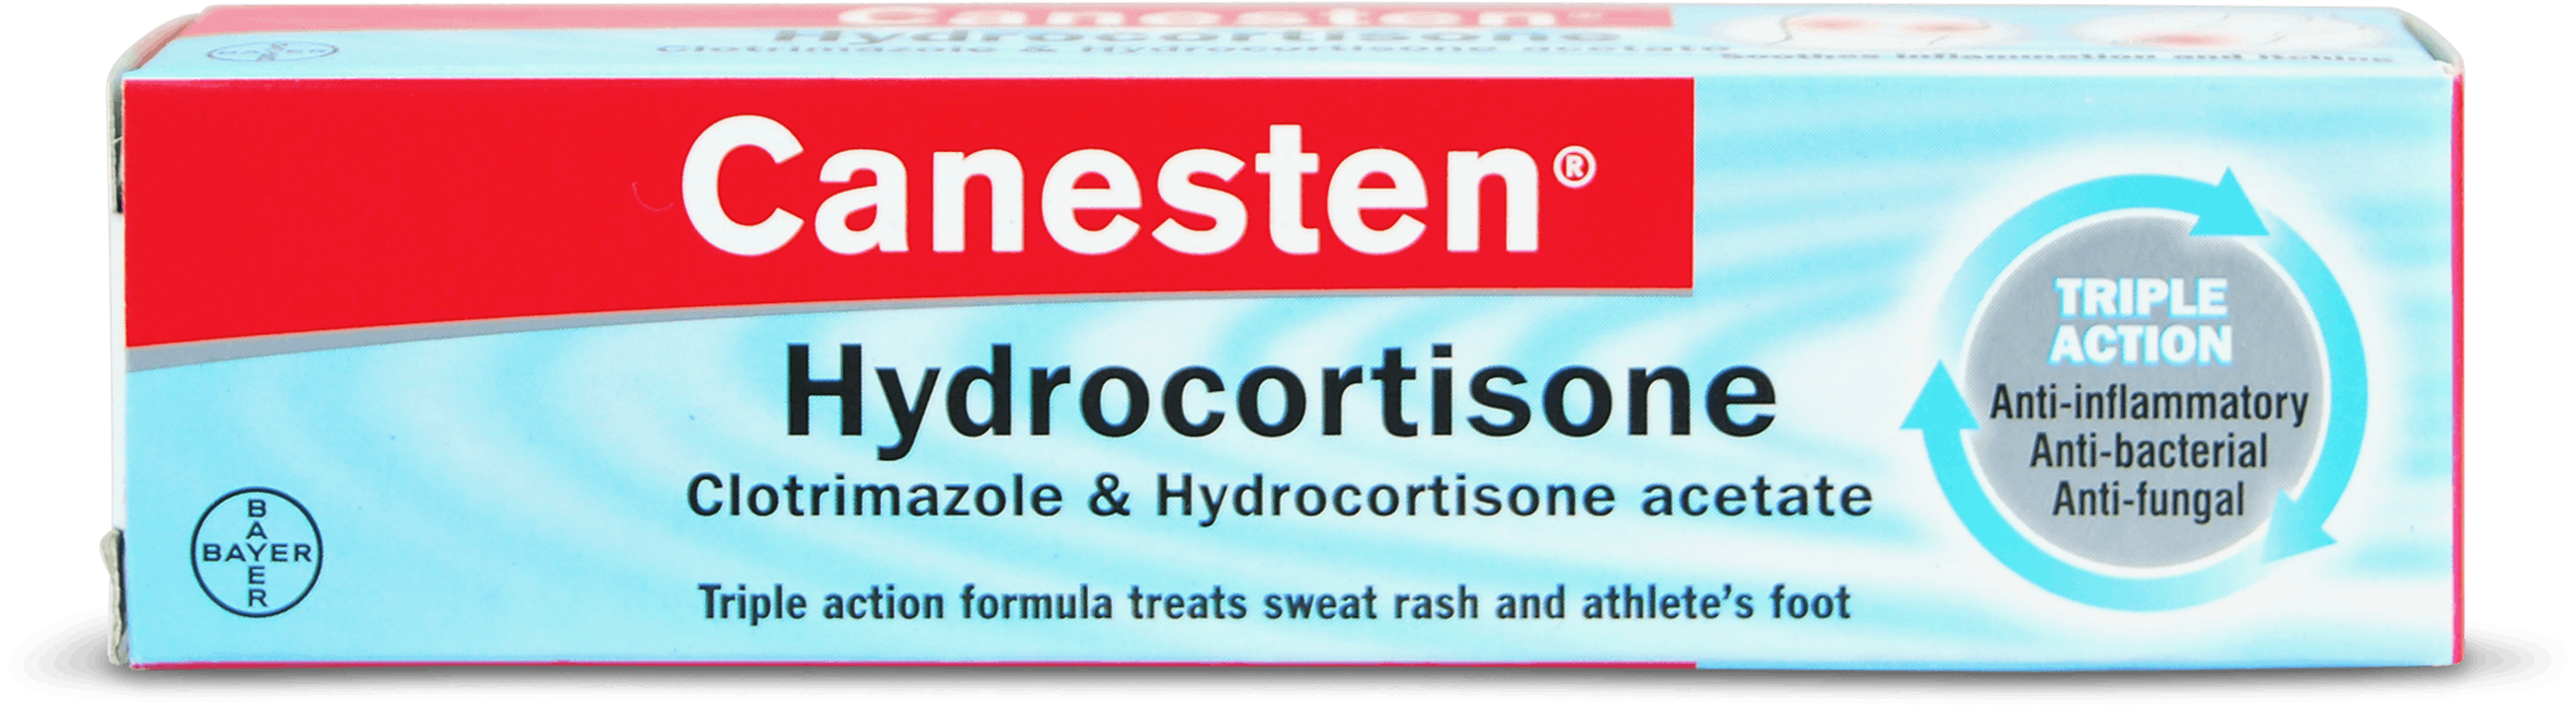 hydrocortisone cream while pregnant